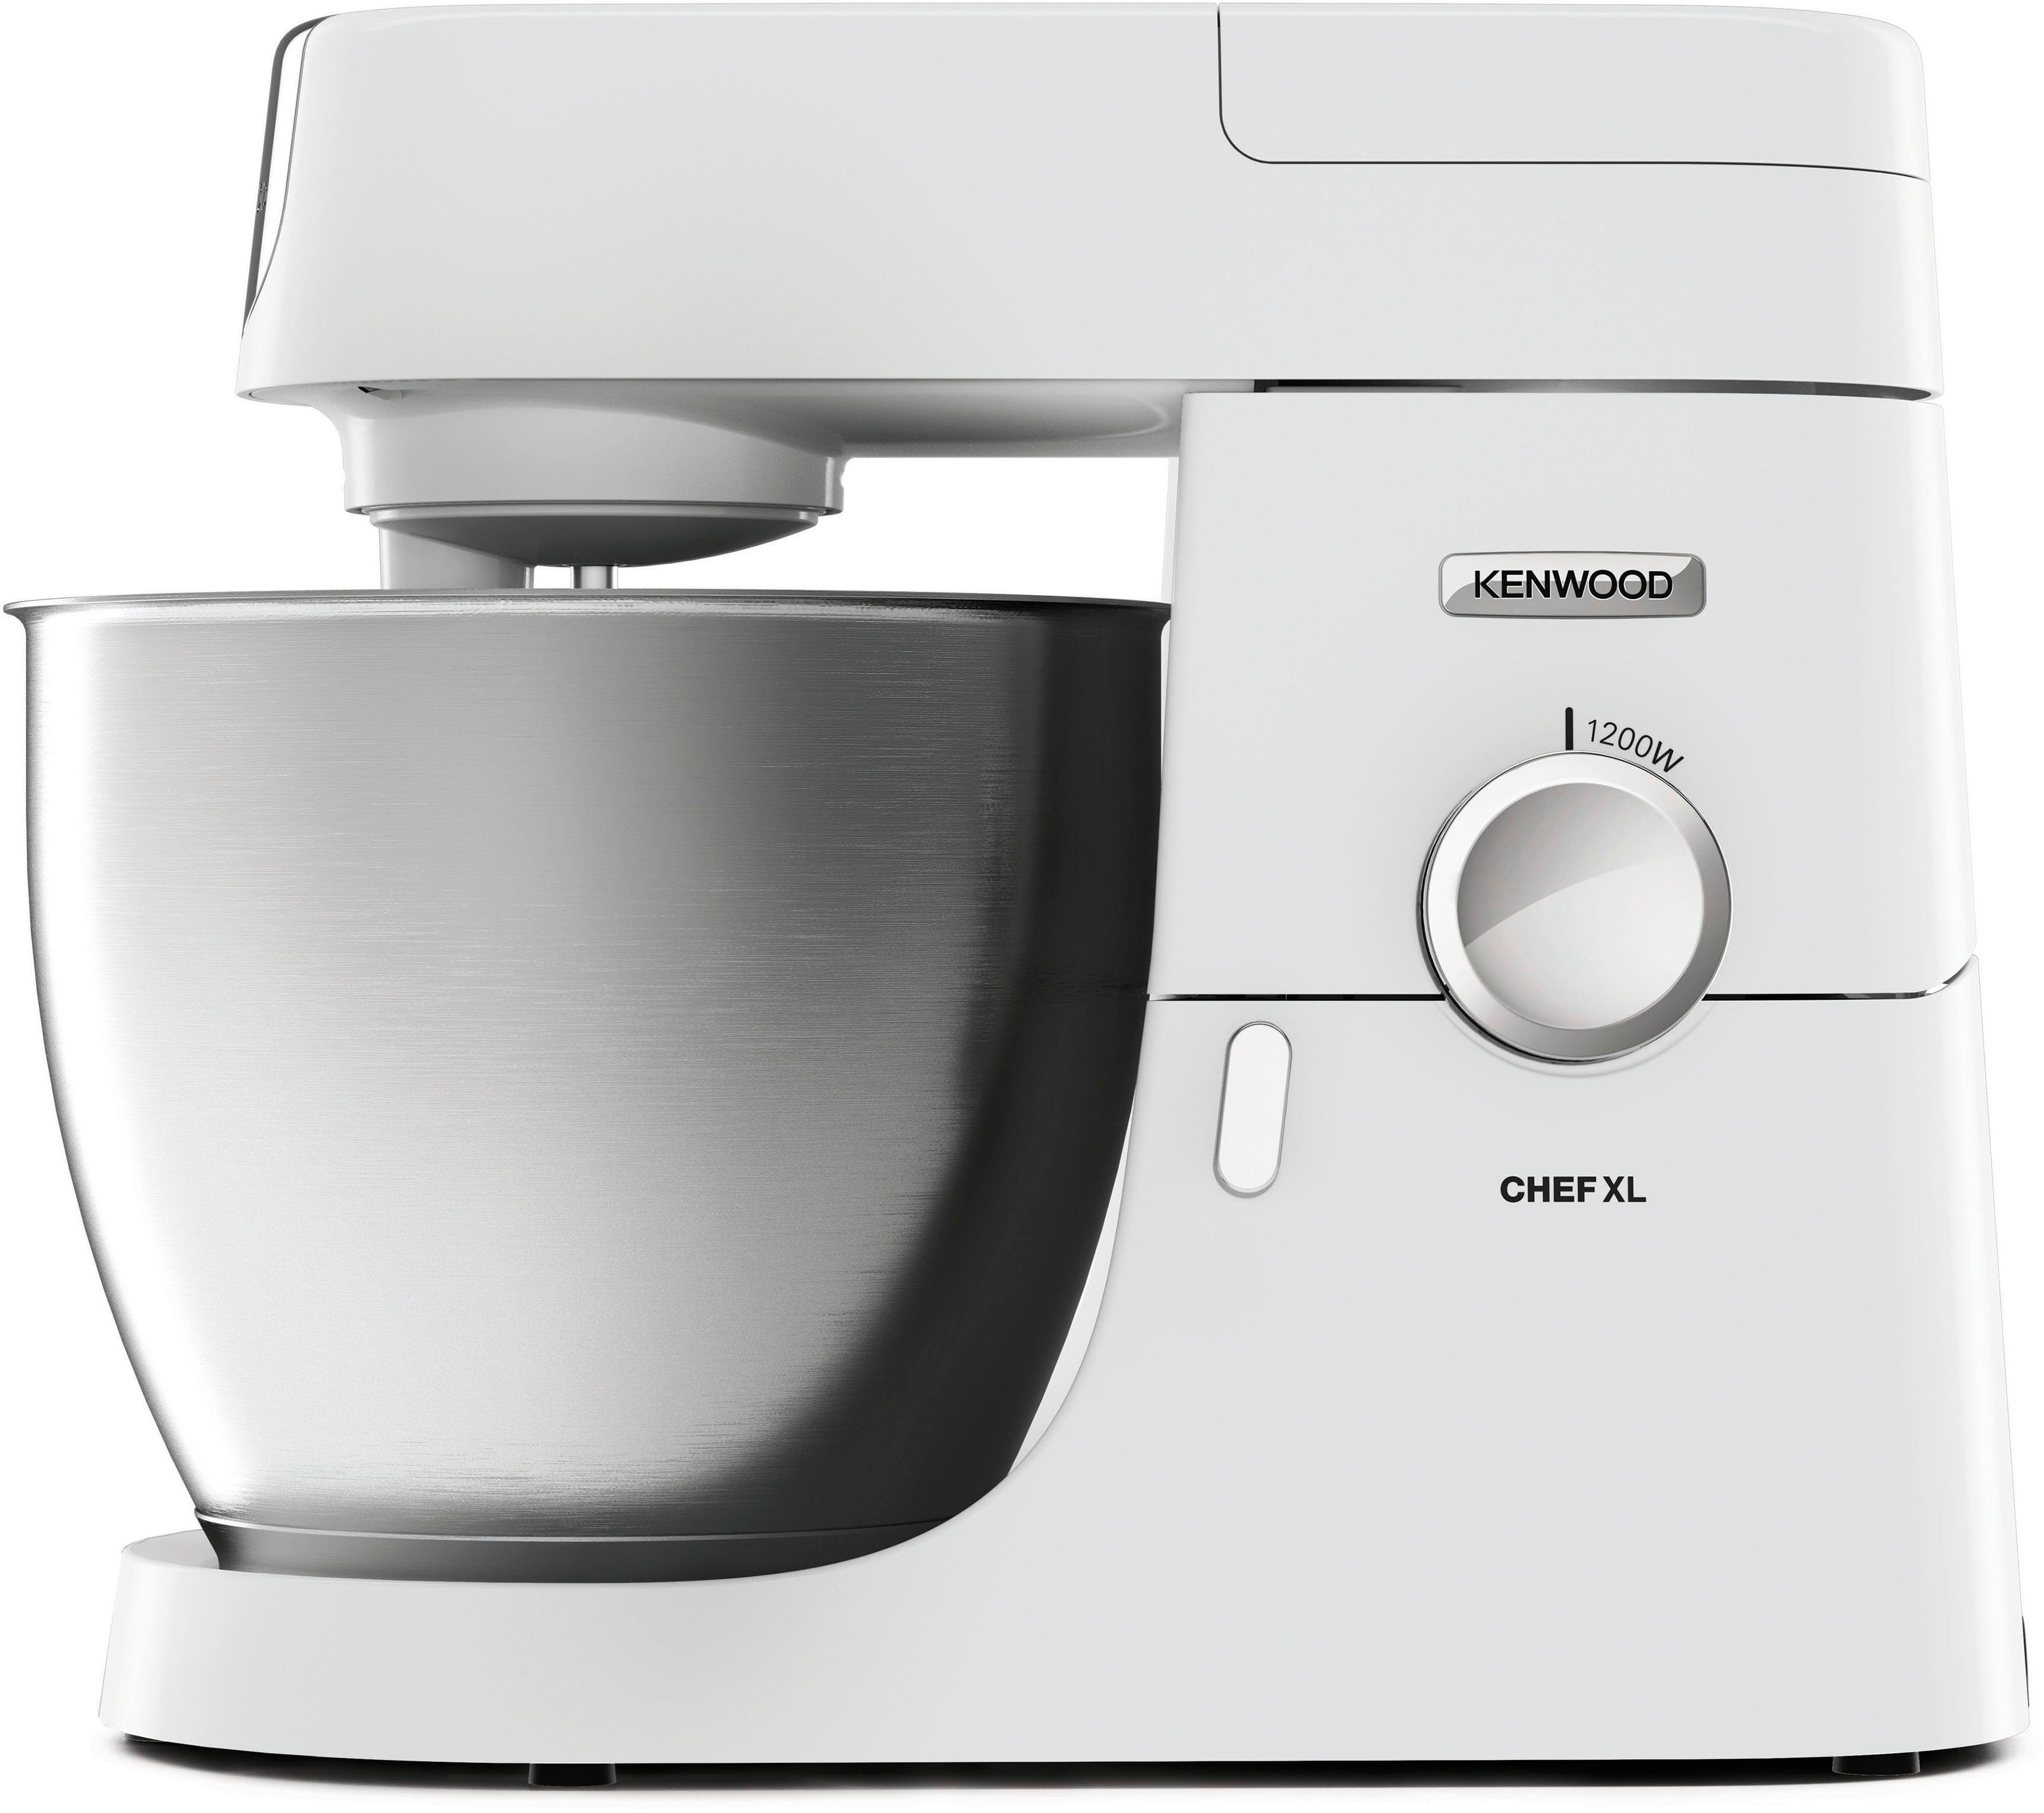 KENWOOD Küchenmaschine Chef XL KVL4101W, 1200 W, 6,7 l Schüssel, Weiß  online kaufen | OTTO